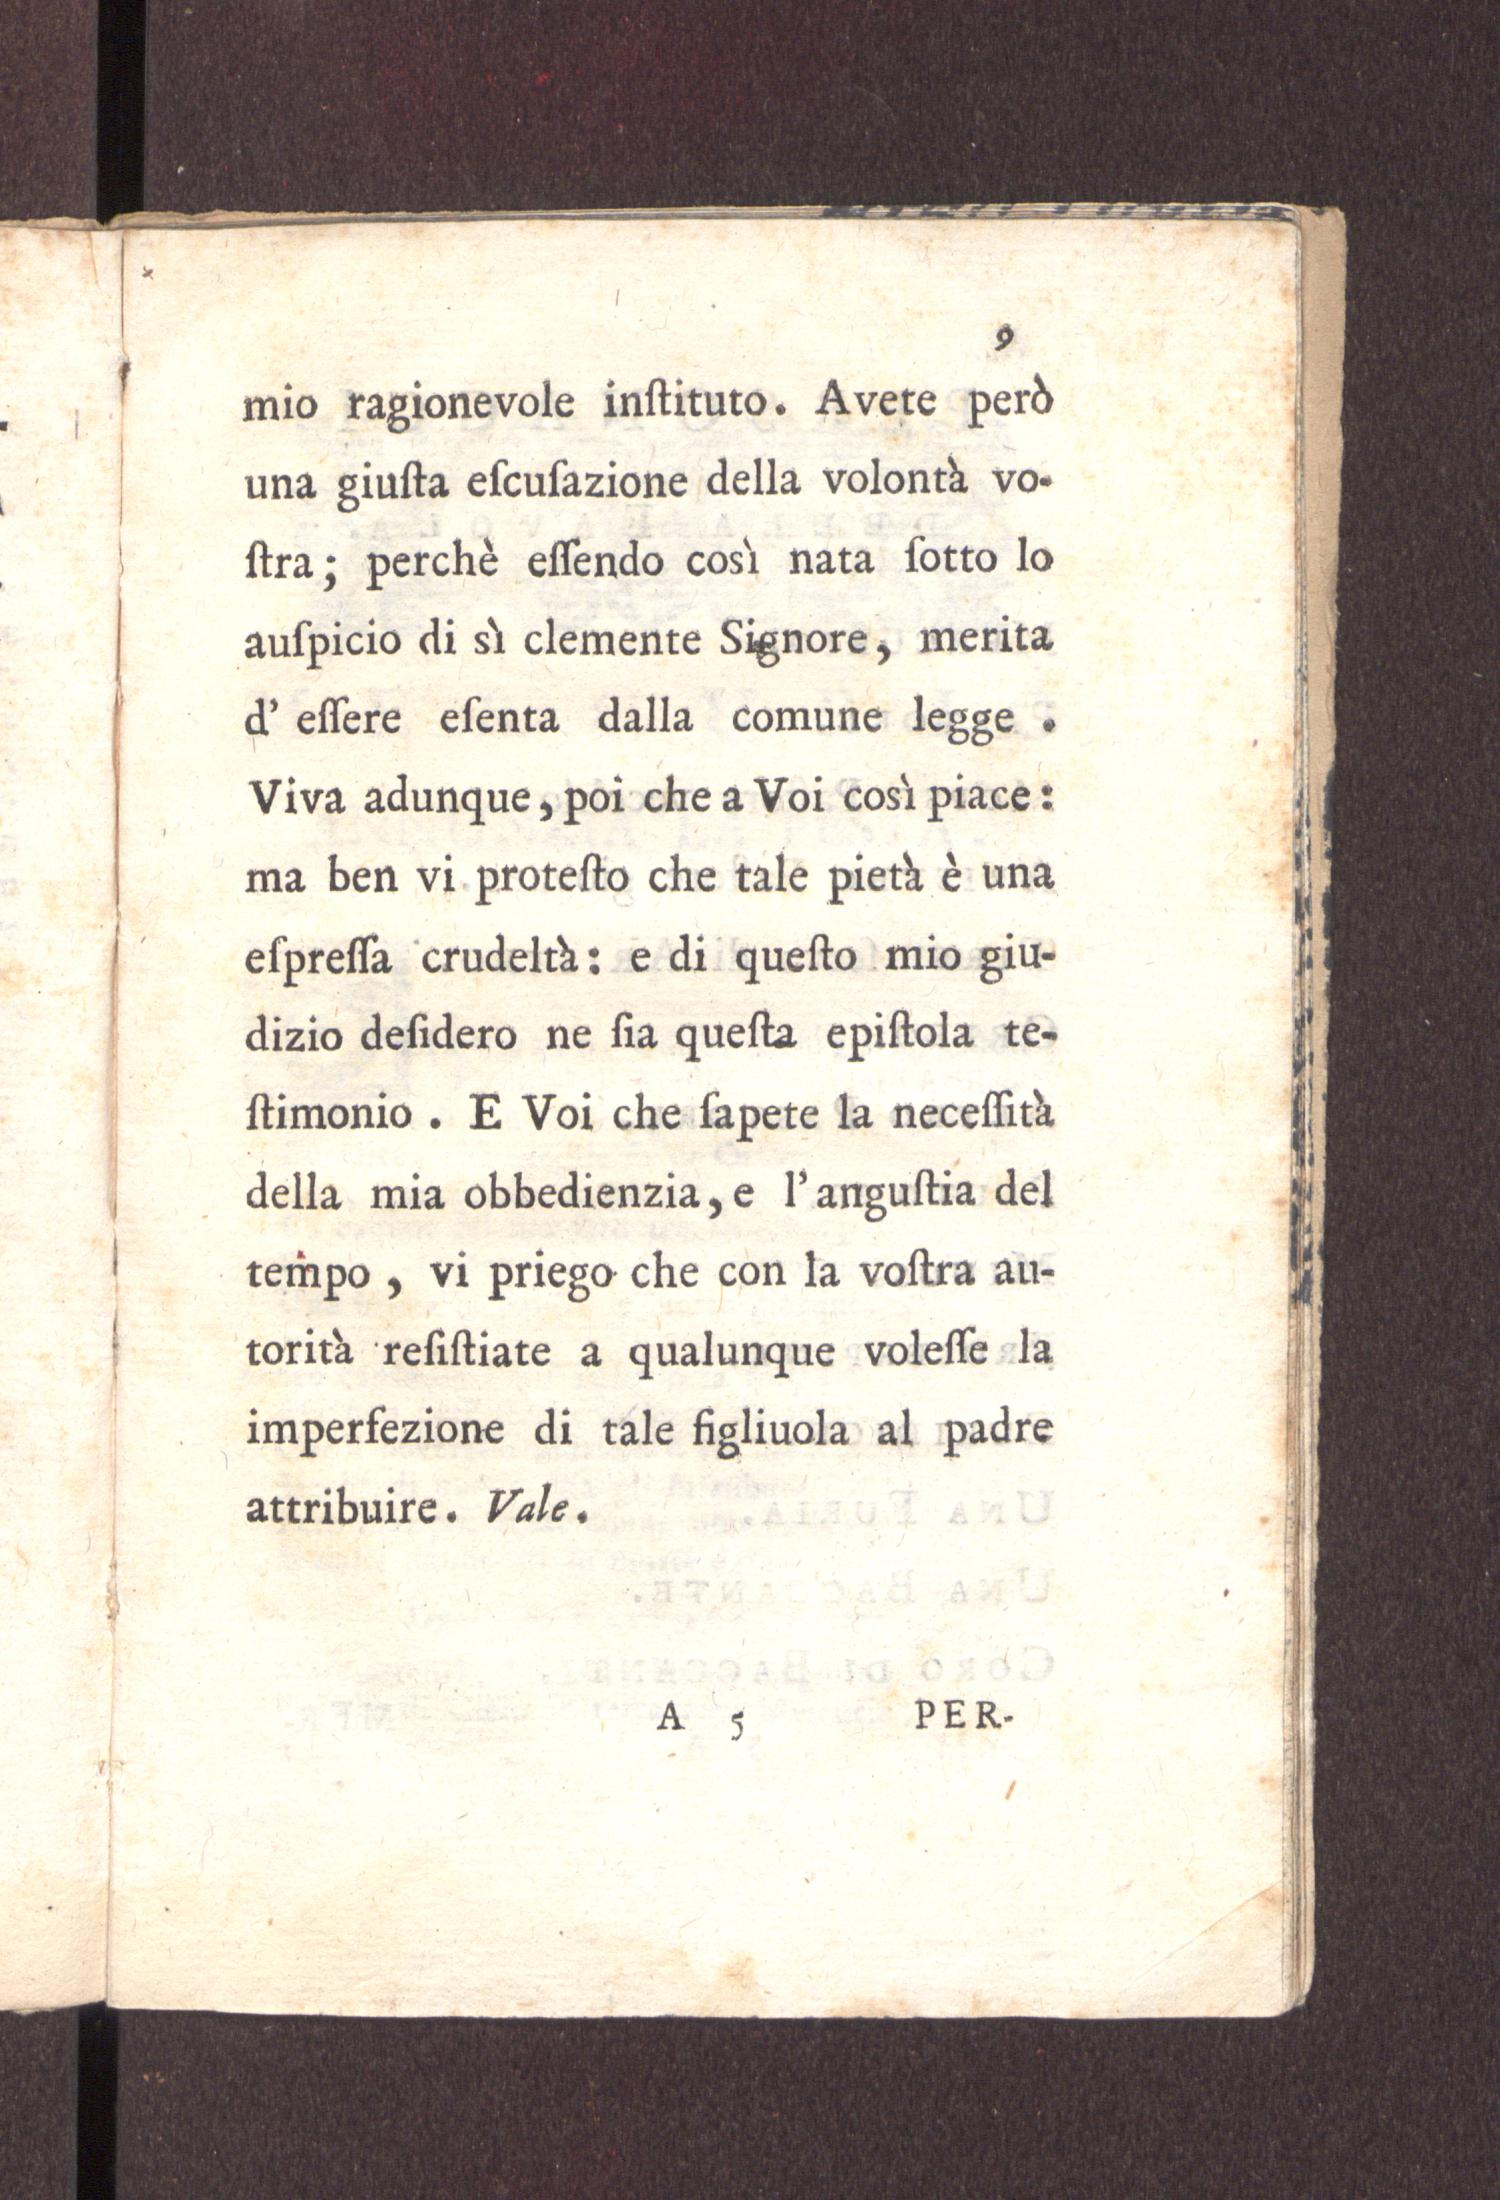 La favola di Orfeo - Page 9 - UNT Digital Library